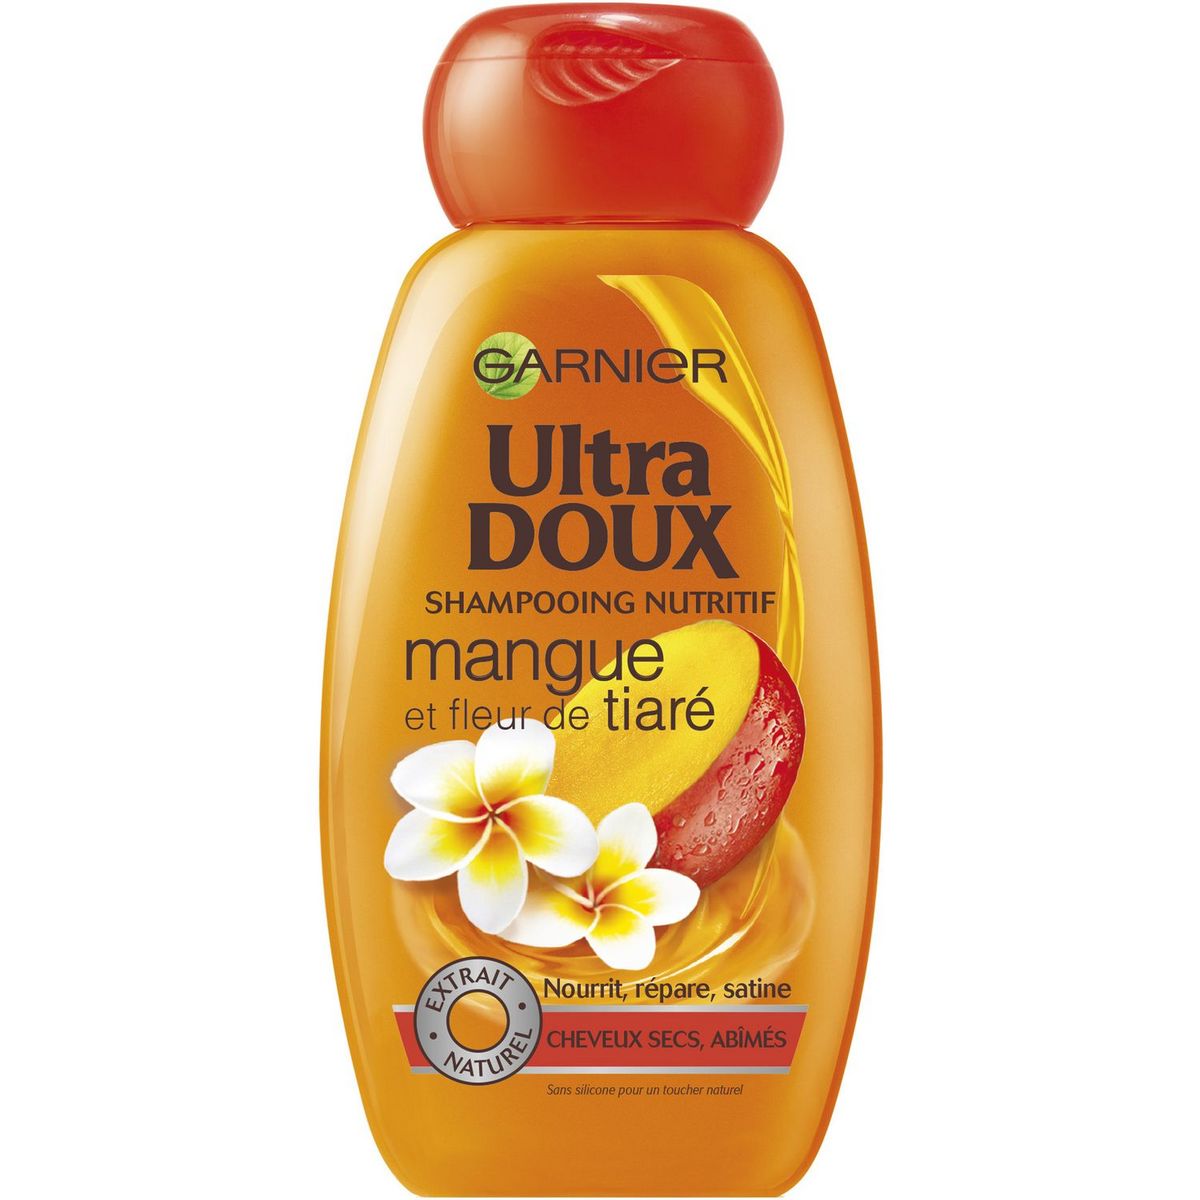 GARNIER ULTRA DOUX Garnier Ultra Doux shampooing mangue et fleur de tiaré  250ml pas cher - Auchan.fr